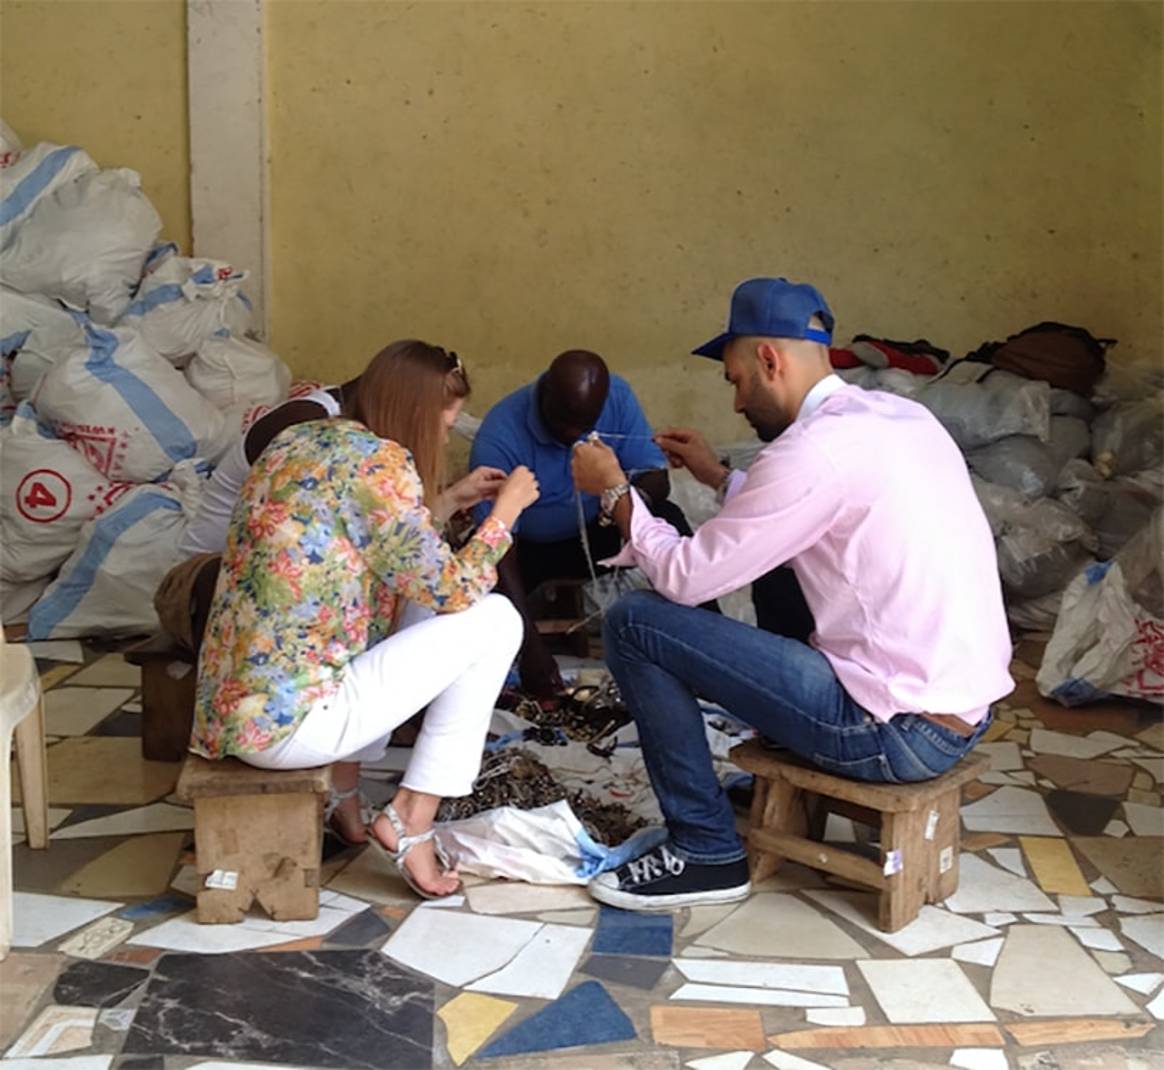 Au marché de Katamanto au Ghana où un petit commerçant à l’étal a acheté des bijoux emmêlés de la marque Monsoon à PLG. Kassardjian et Banasik étaient en train de regarder s’ils pouvaient démêler les bijoux afin de les rendre vendables.